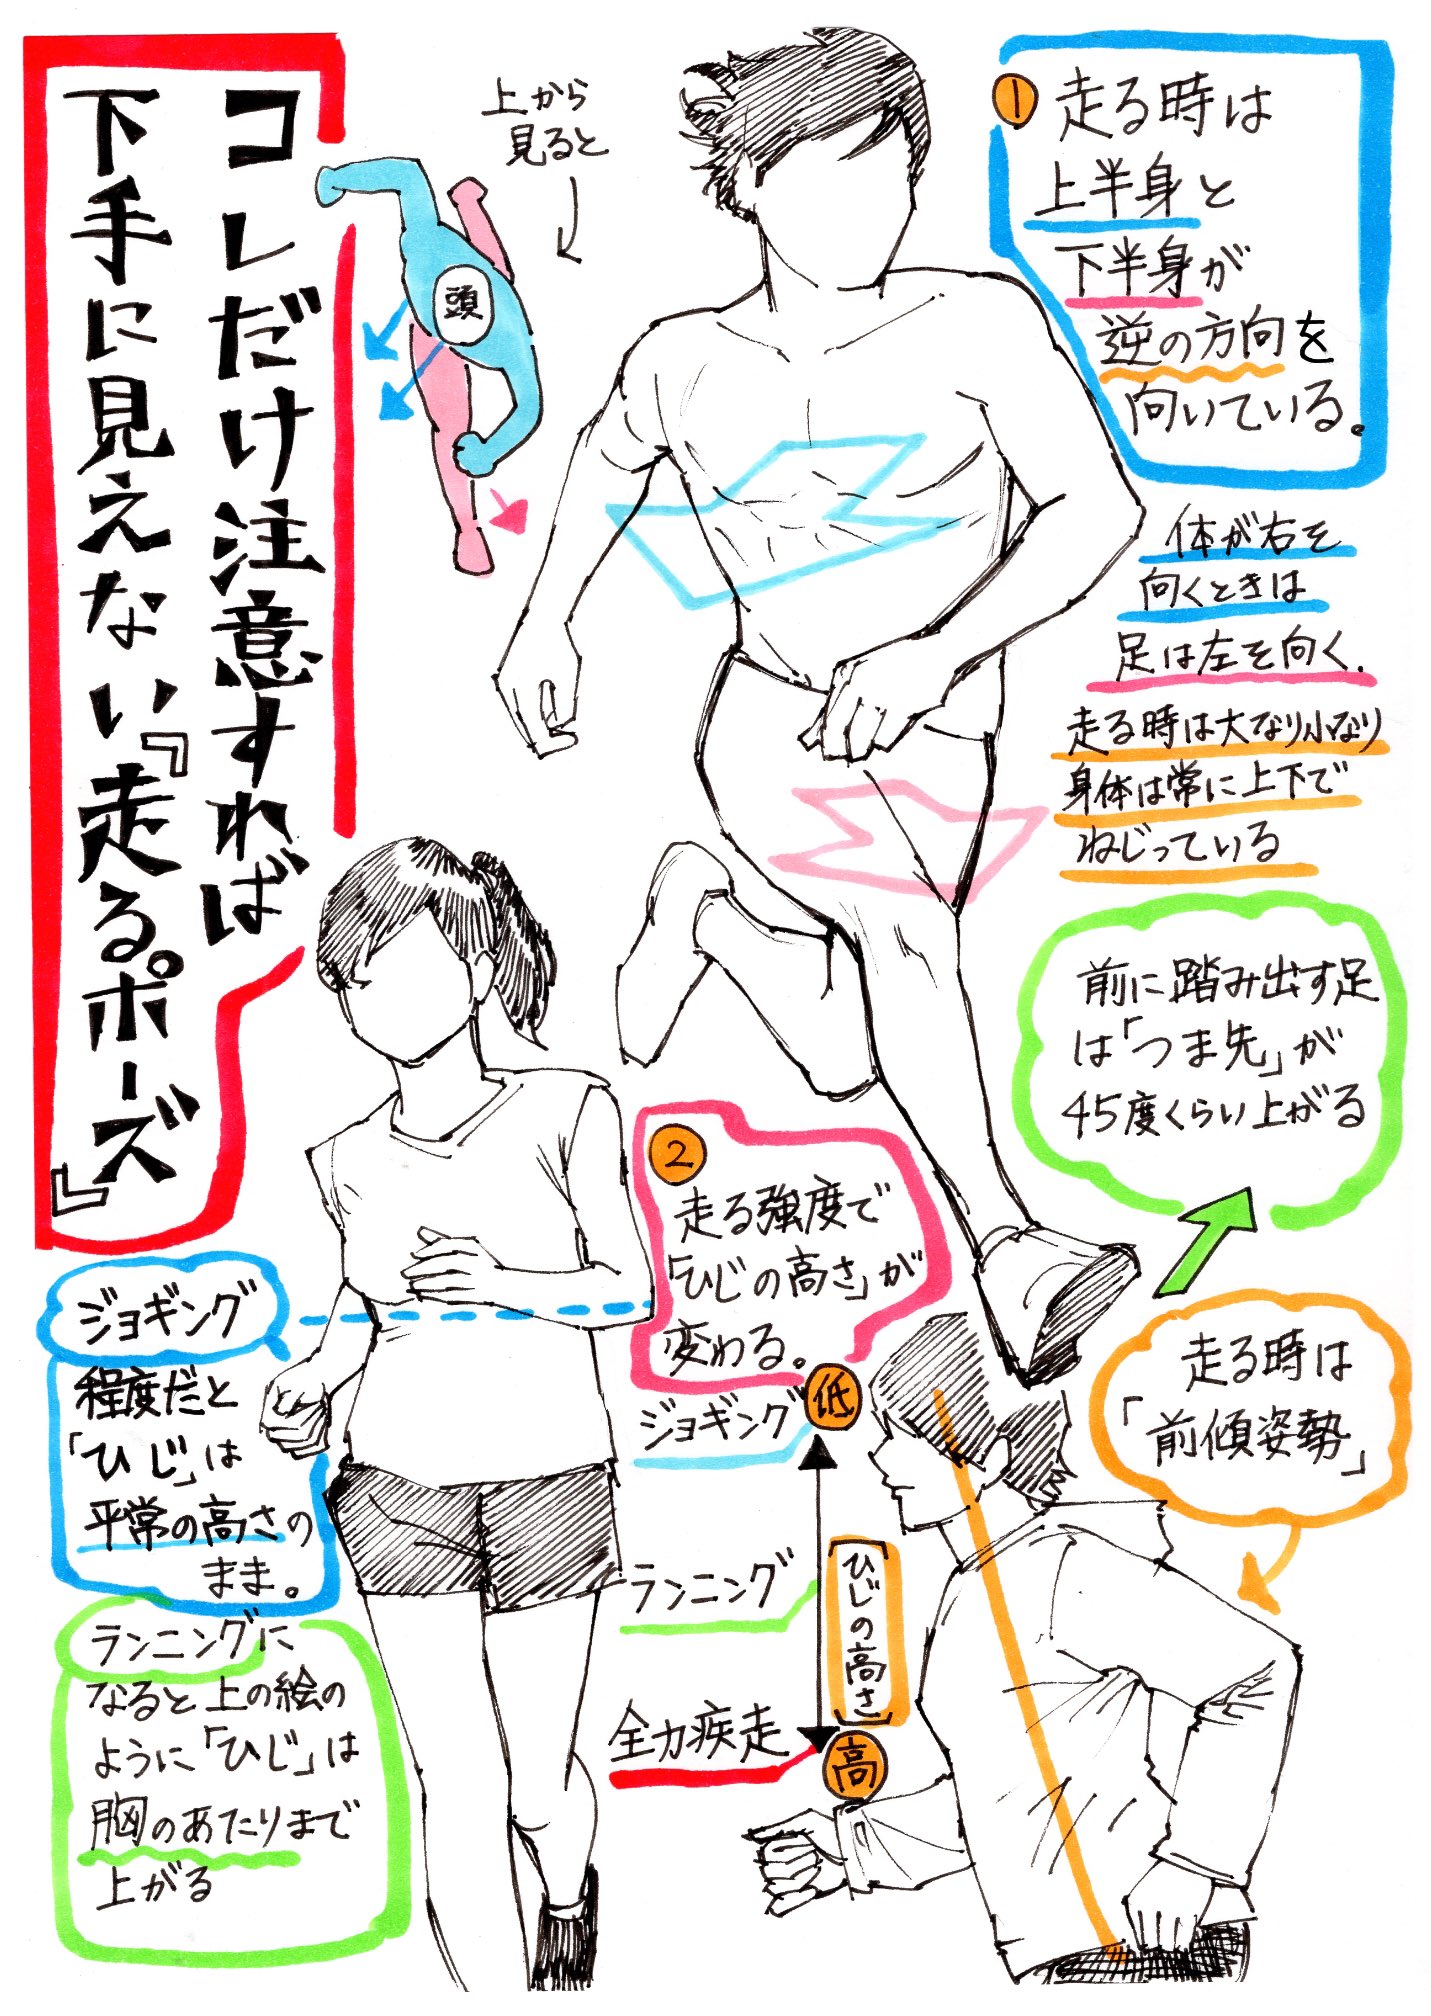 吉村拓也 イラスト講座 走るポーズの描き方 腕や胴体の回転アングルが上達する 体の動きを出すデッサン方法